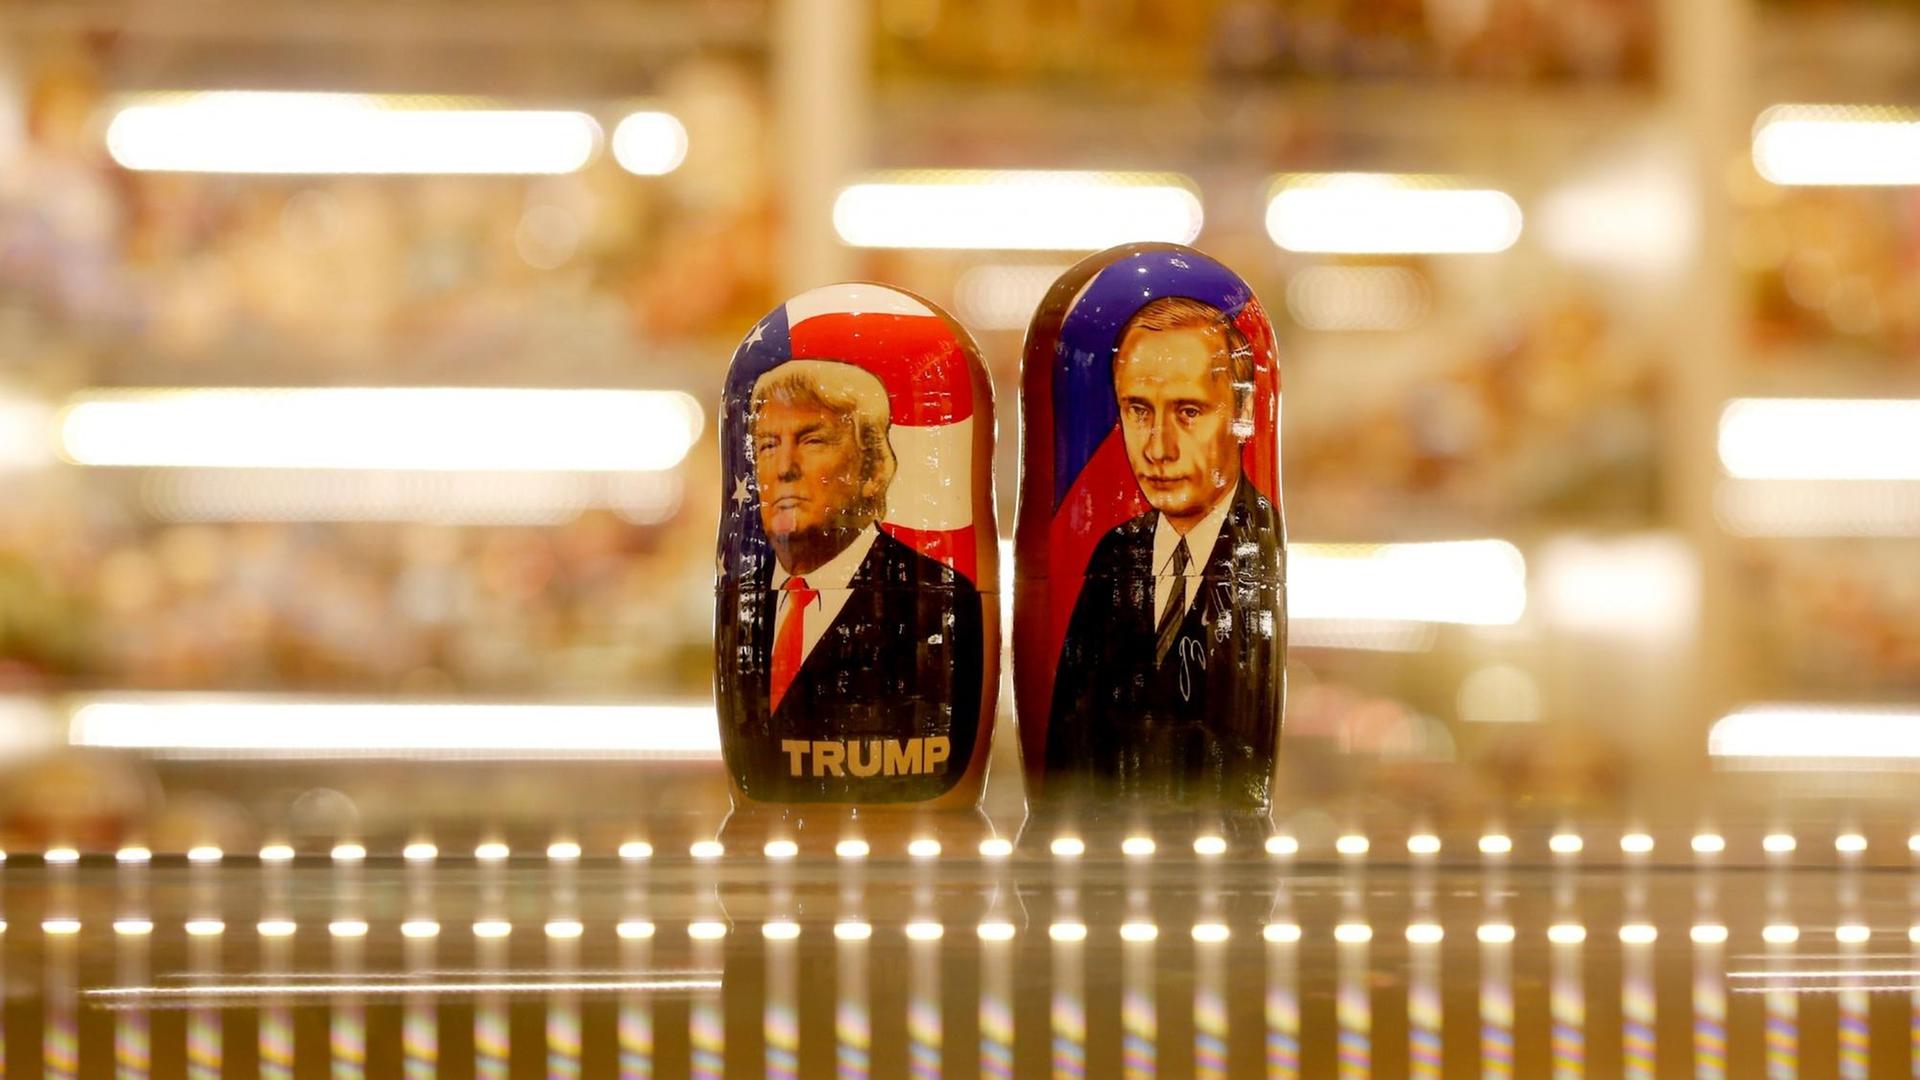 Zwei bemalte Matroschka-Puppen von Wladimir Putin und Donald Trump auf der gläsernen Theke eines Souvenirgeschäft.